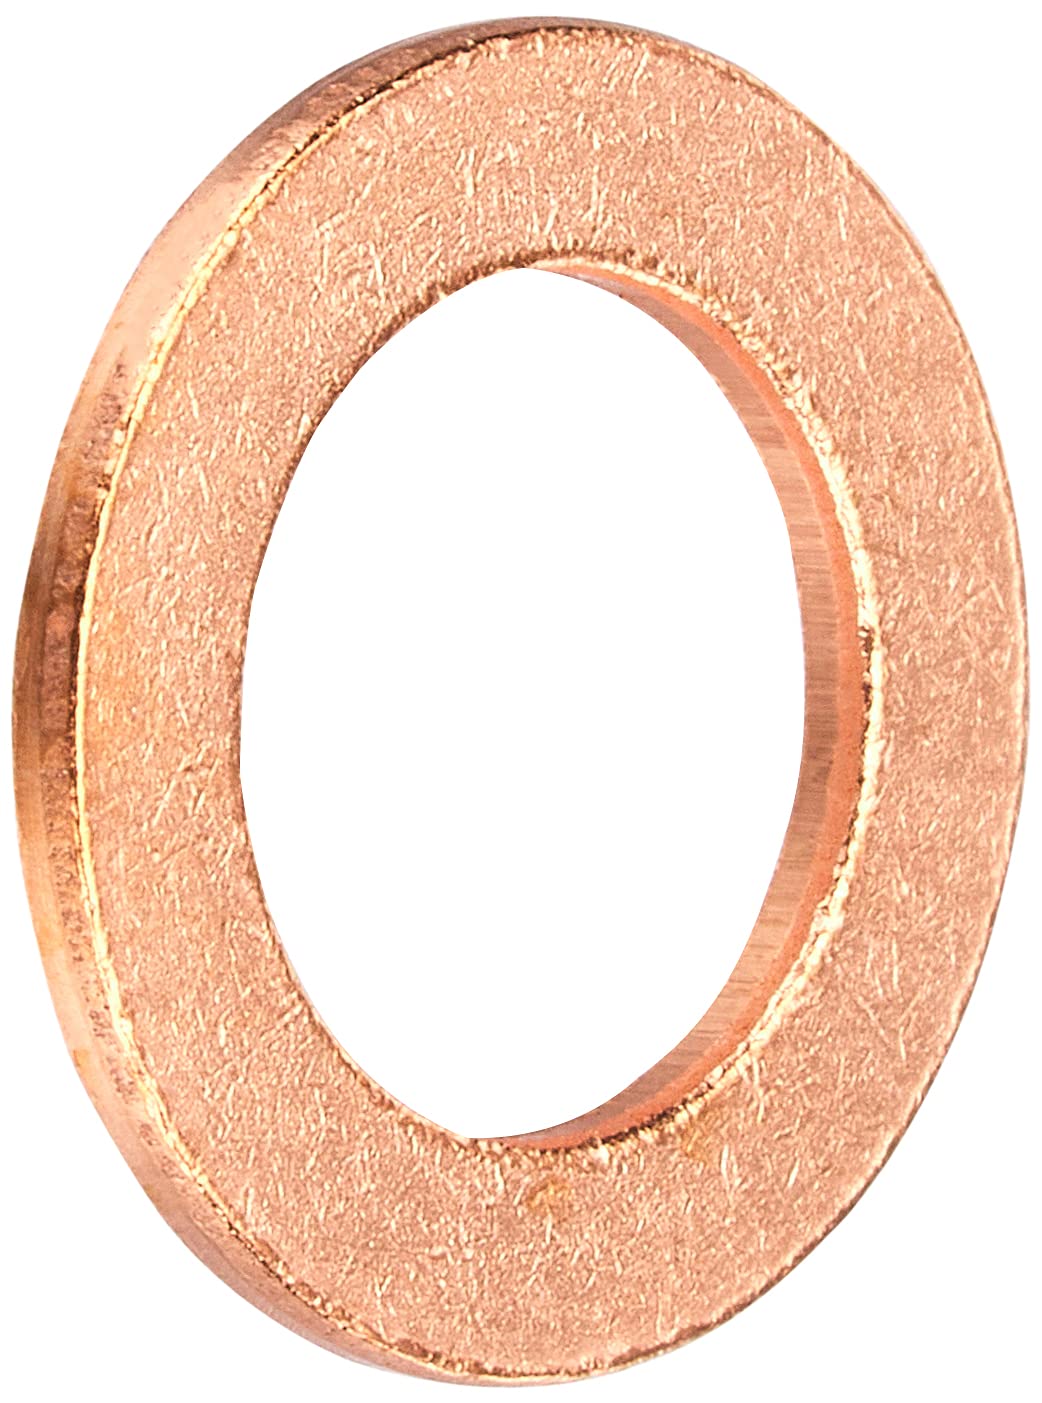 キタコ(KITACO) 銅ワッシャー/銅パッキン(φ8) 8.6×13.7×1 汎用 1個入り 0900-092-01002